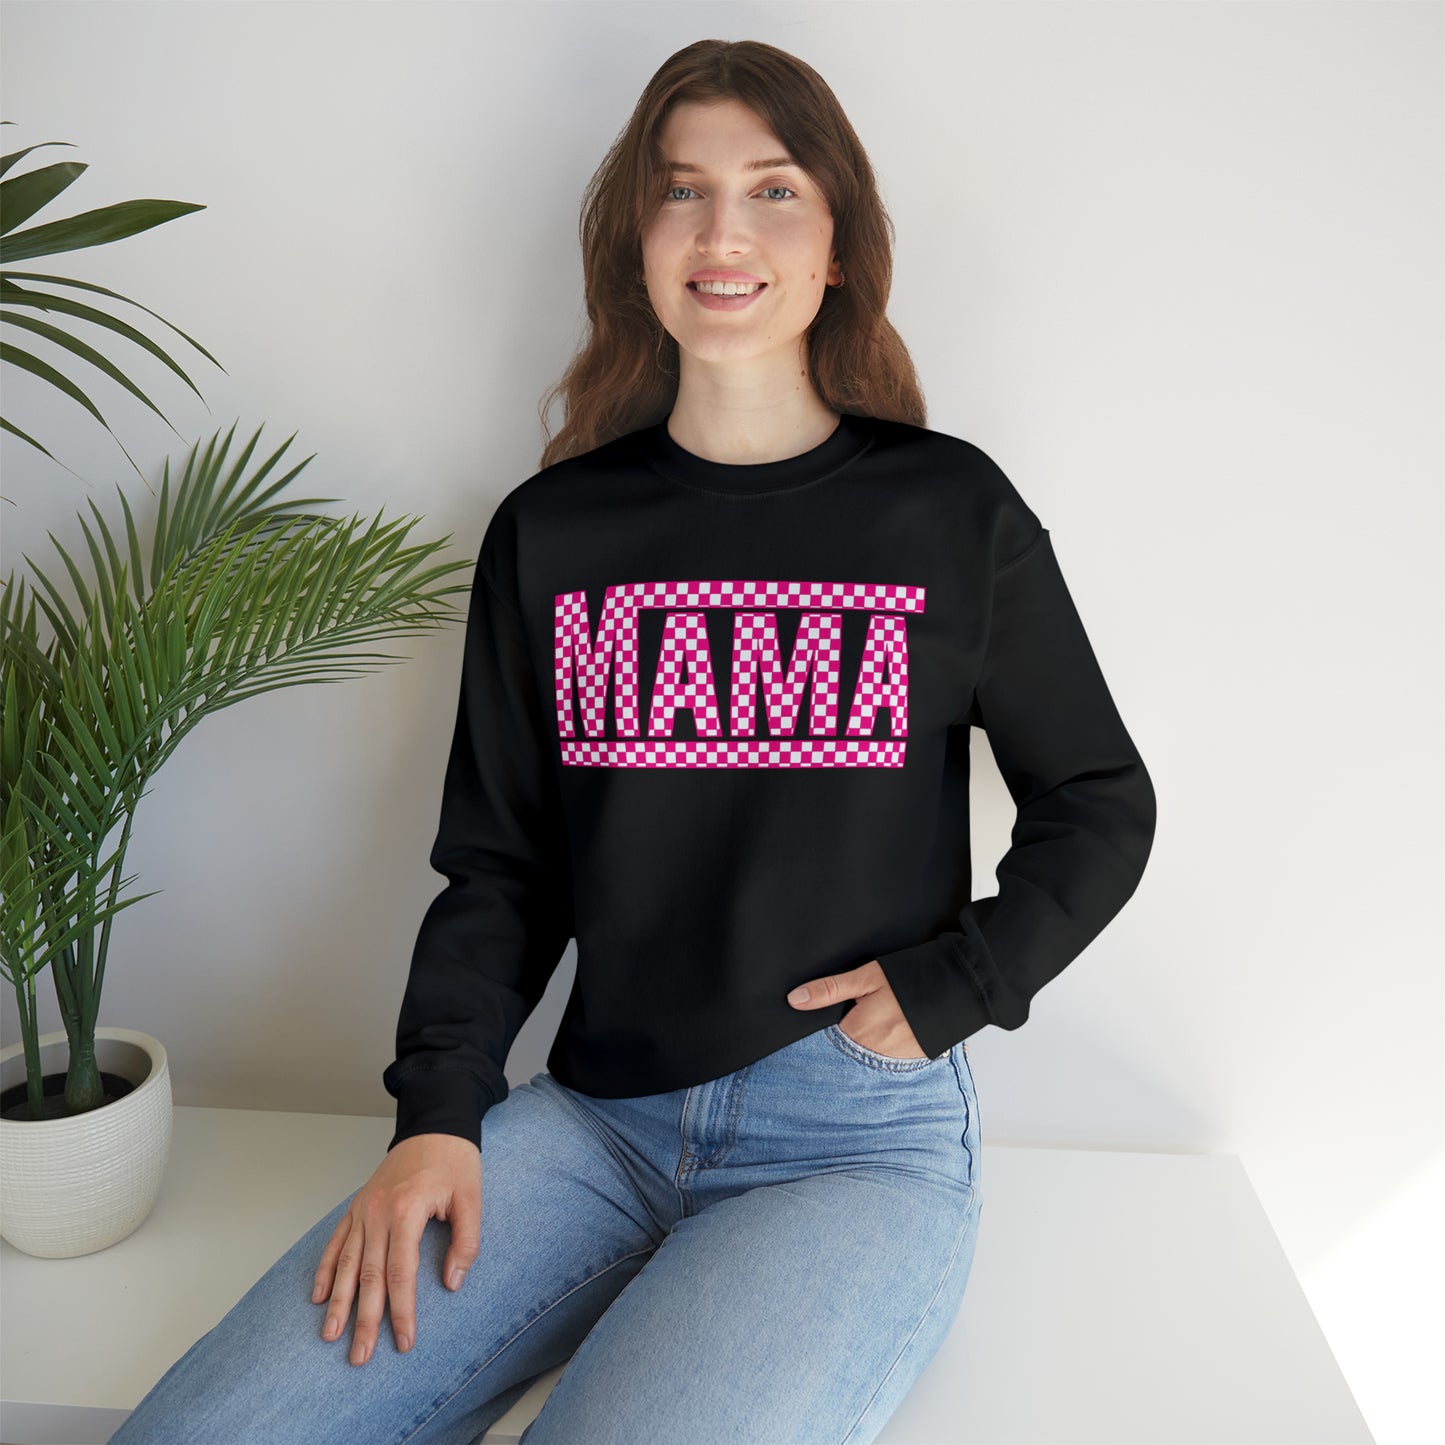 Mama Checkered Sweatshirt